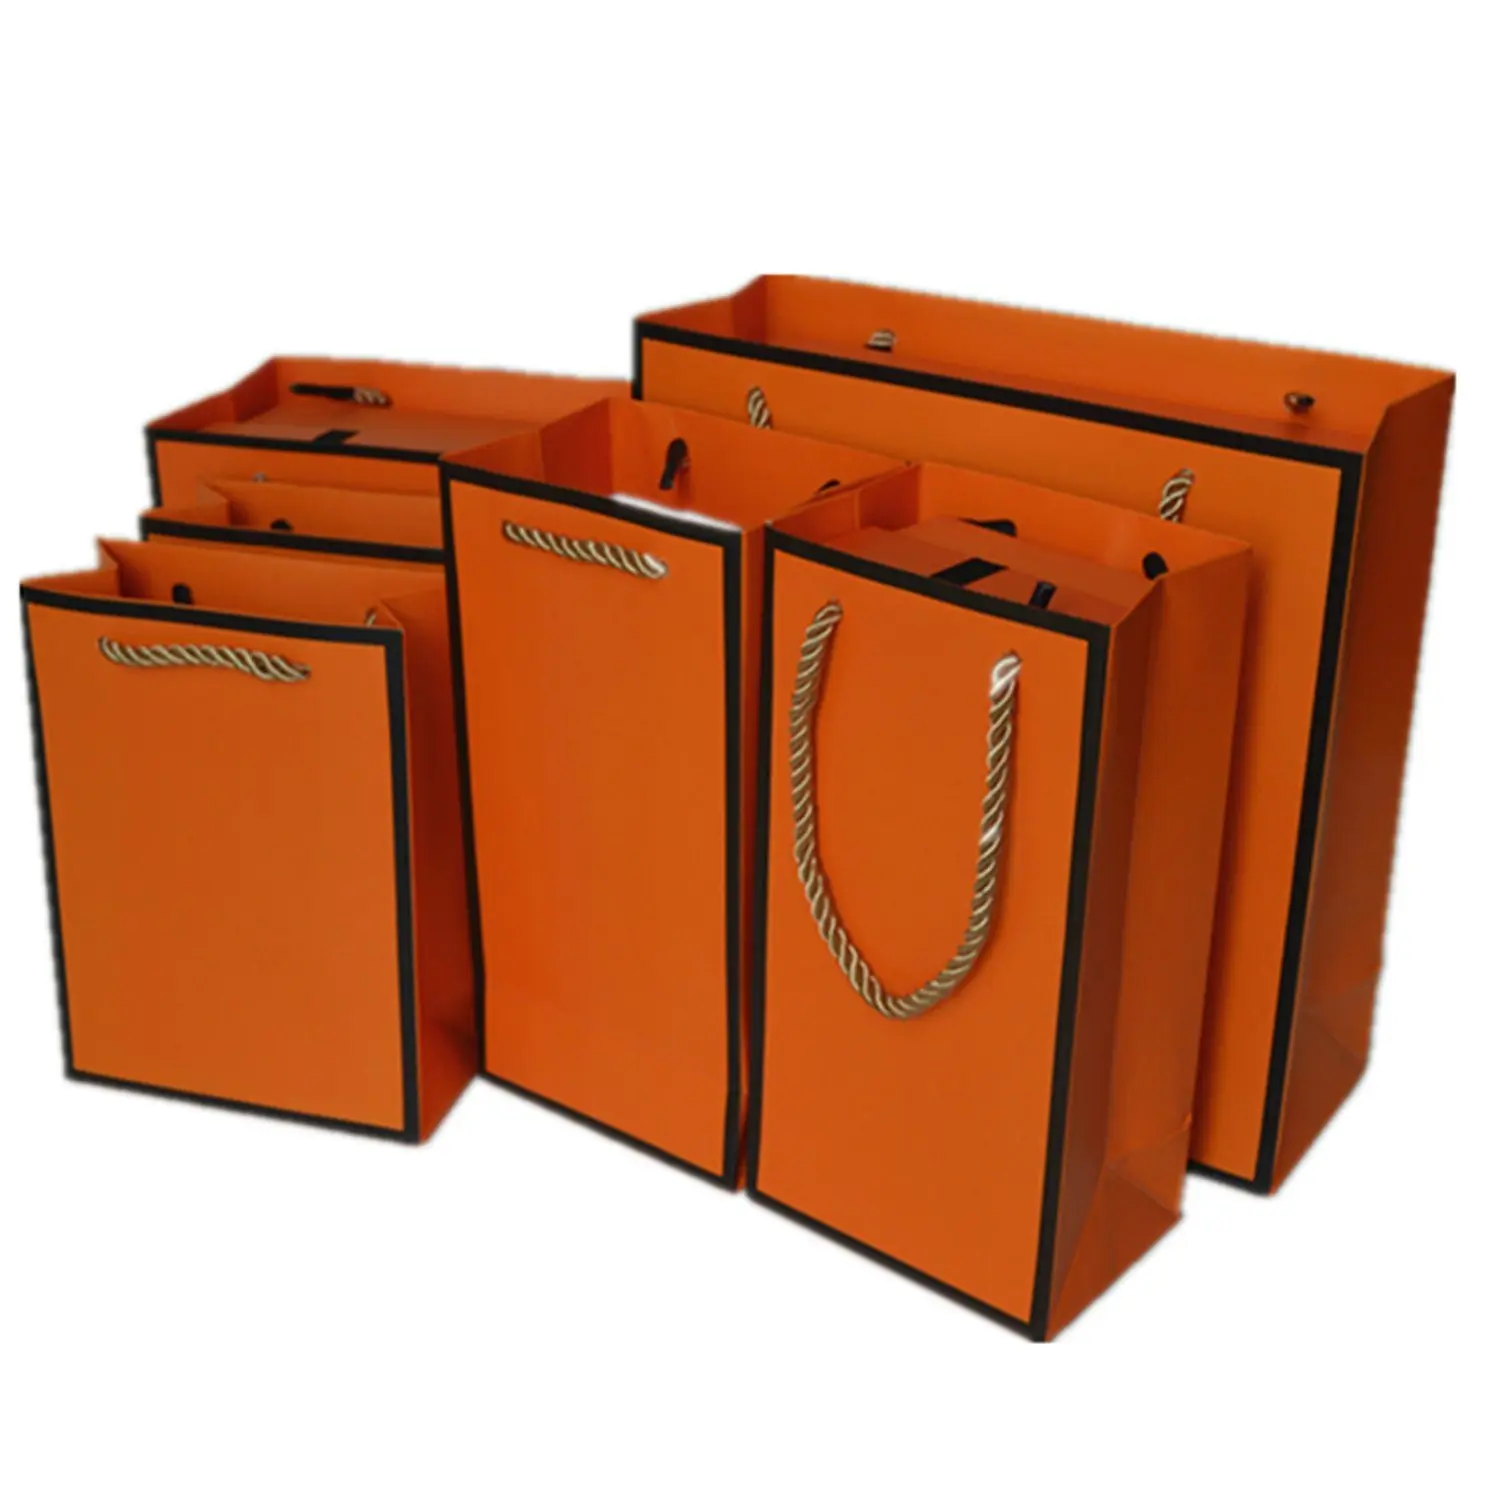 कस्टम लक्जरी नारंगी रंग के कपड़े की दुकान खुदरा पैकेजिंग उपहार कैरी बैग बुटीक शॉपिंग पेपर बैग आपके अपने लोगो के साथ